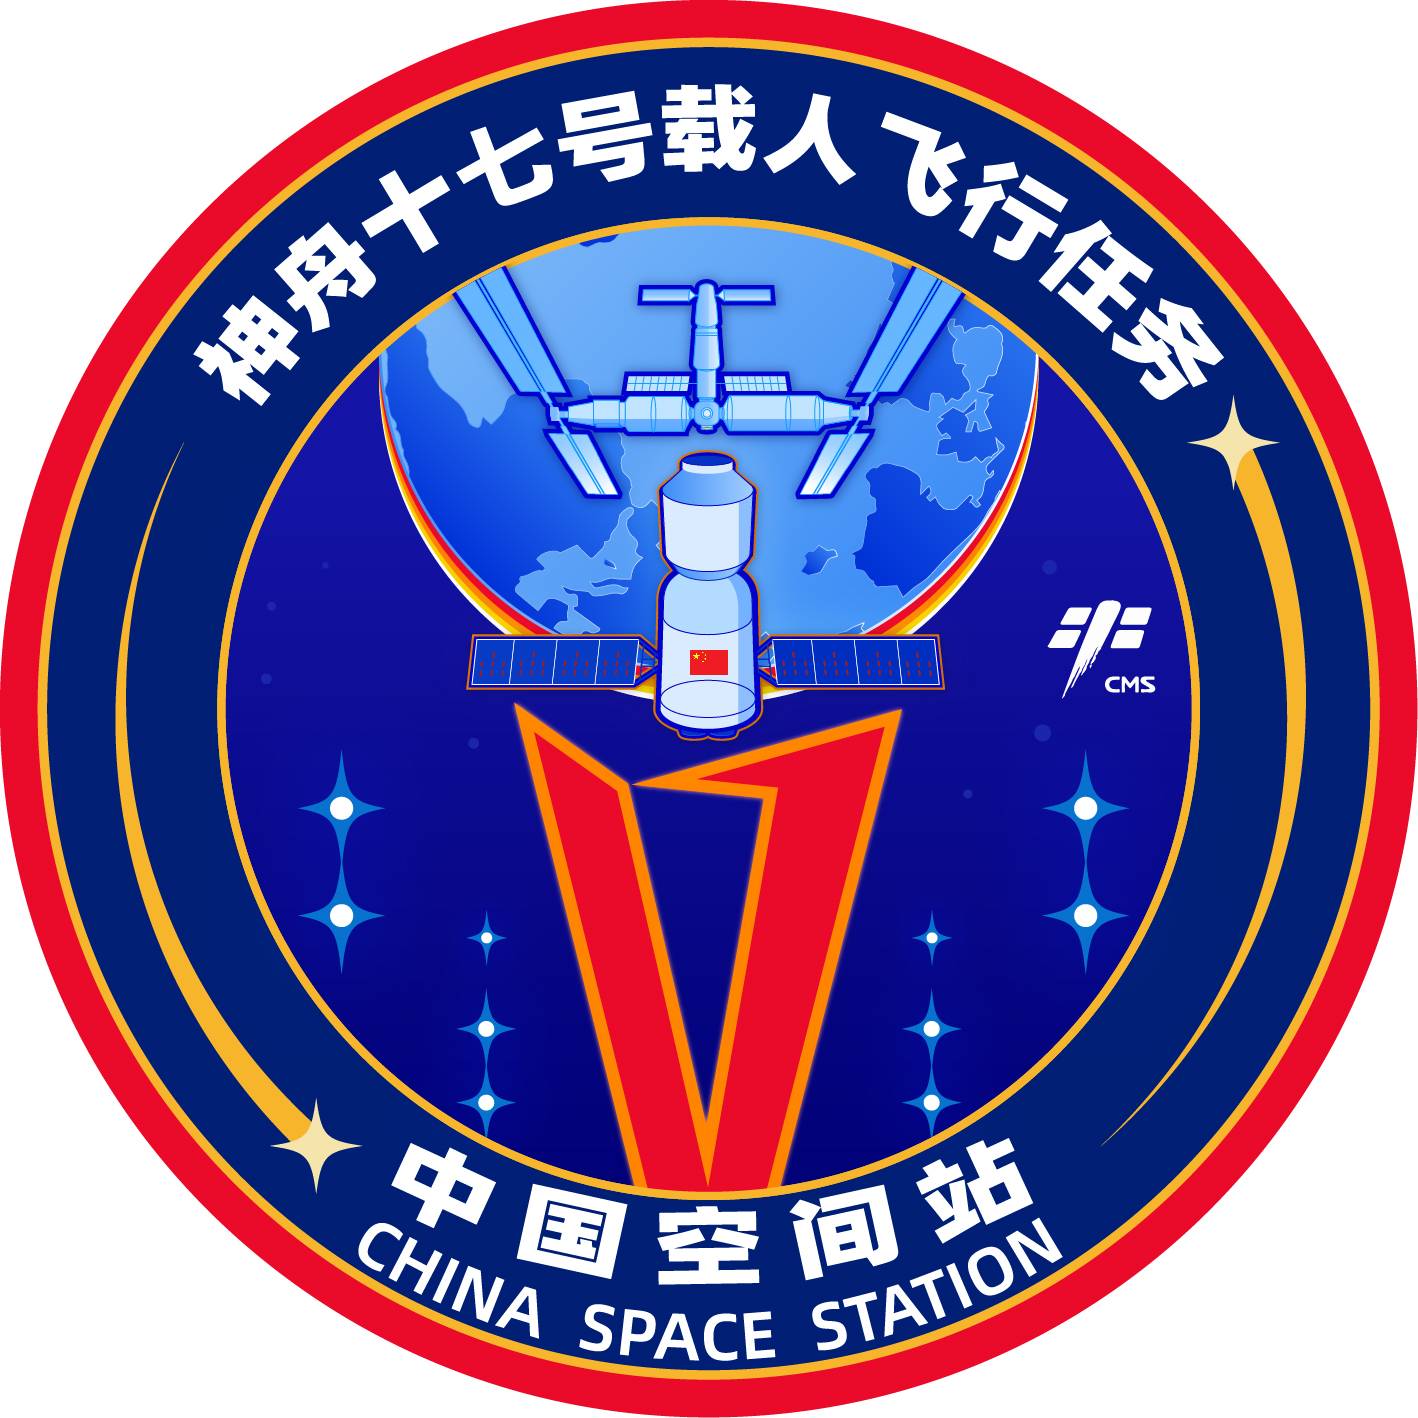 神舟十七号载人飞行任务将于10月发射 - 2023年6月4日, 俄罗斯卫星通讯社